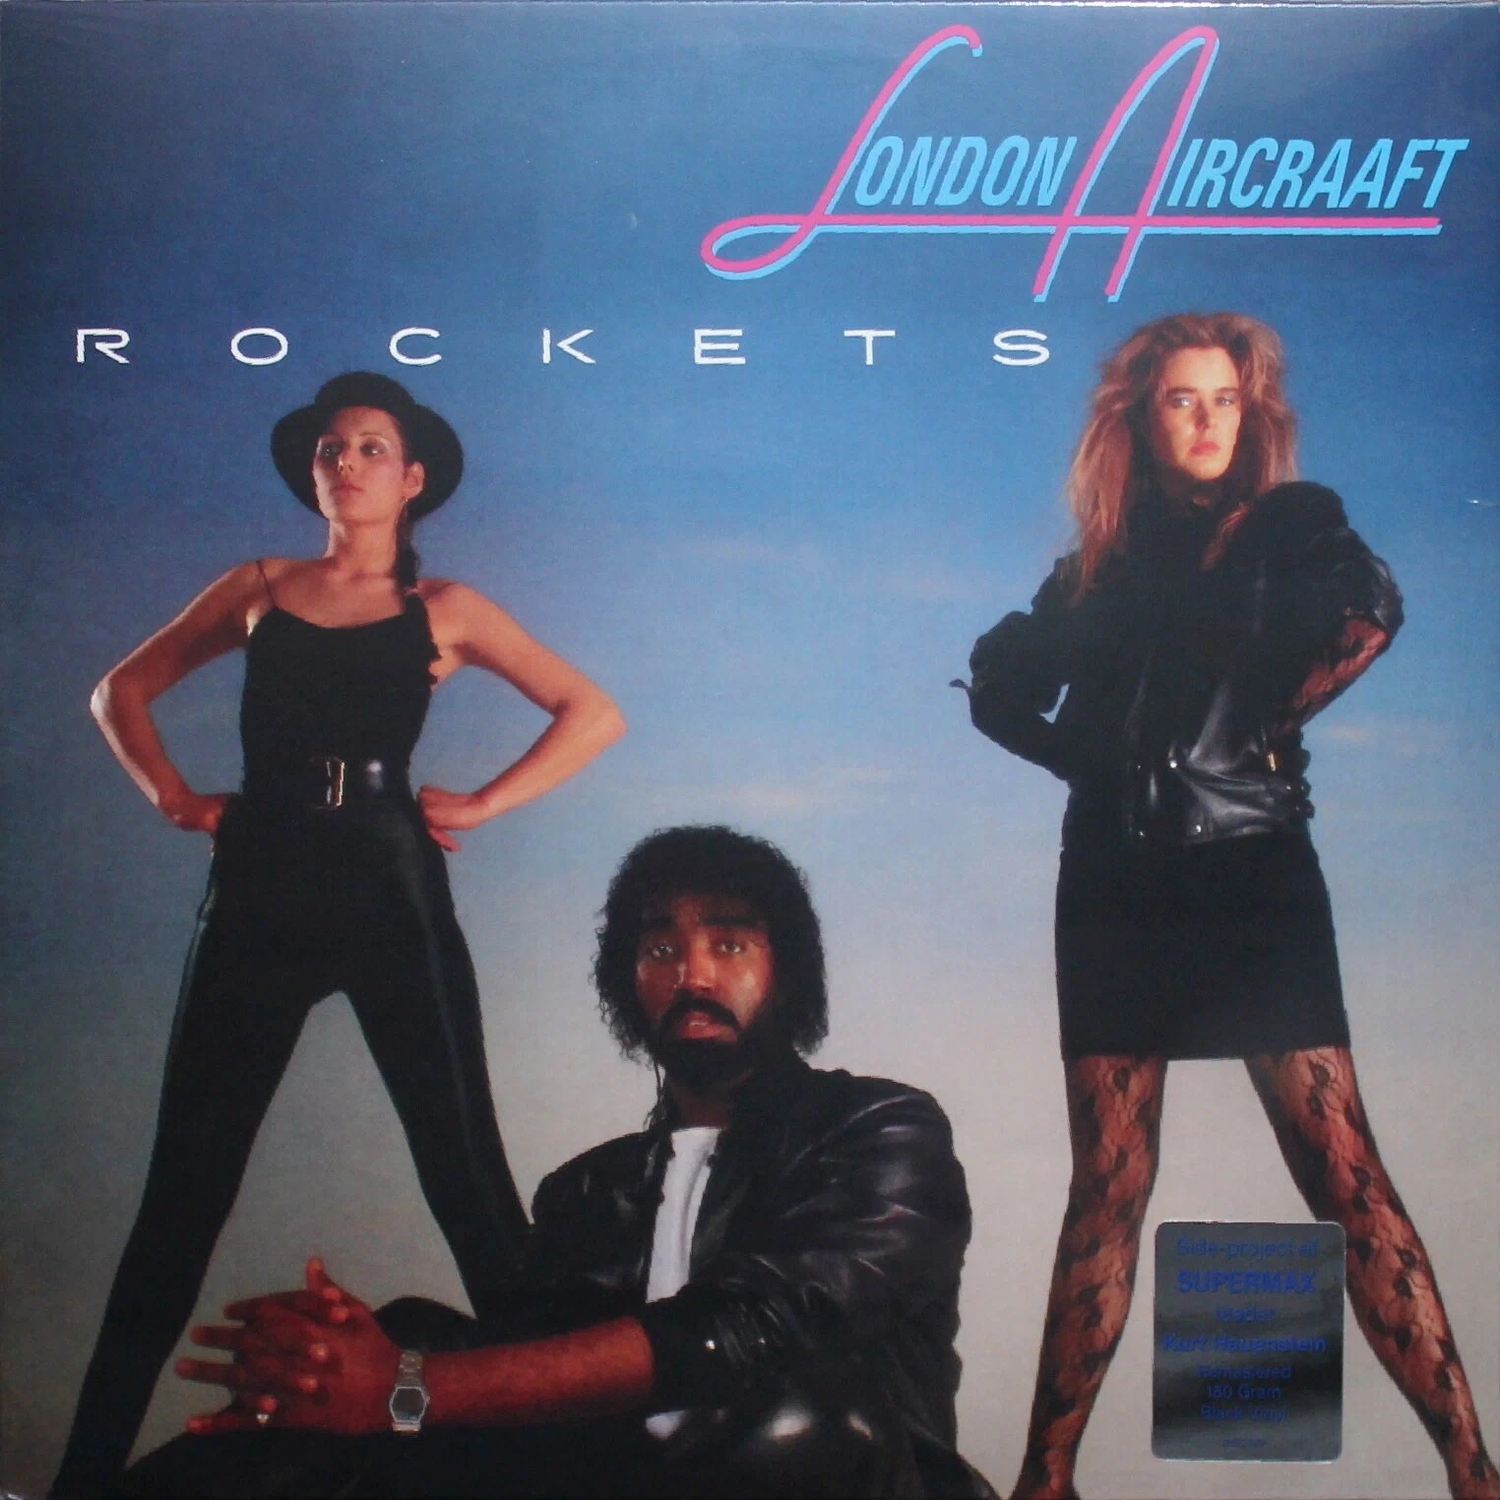 Виниловая Пластинка London Aircraaft Rockets (4601620108716) цена и фото